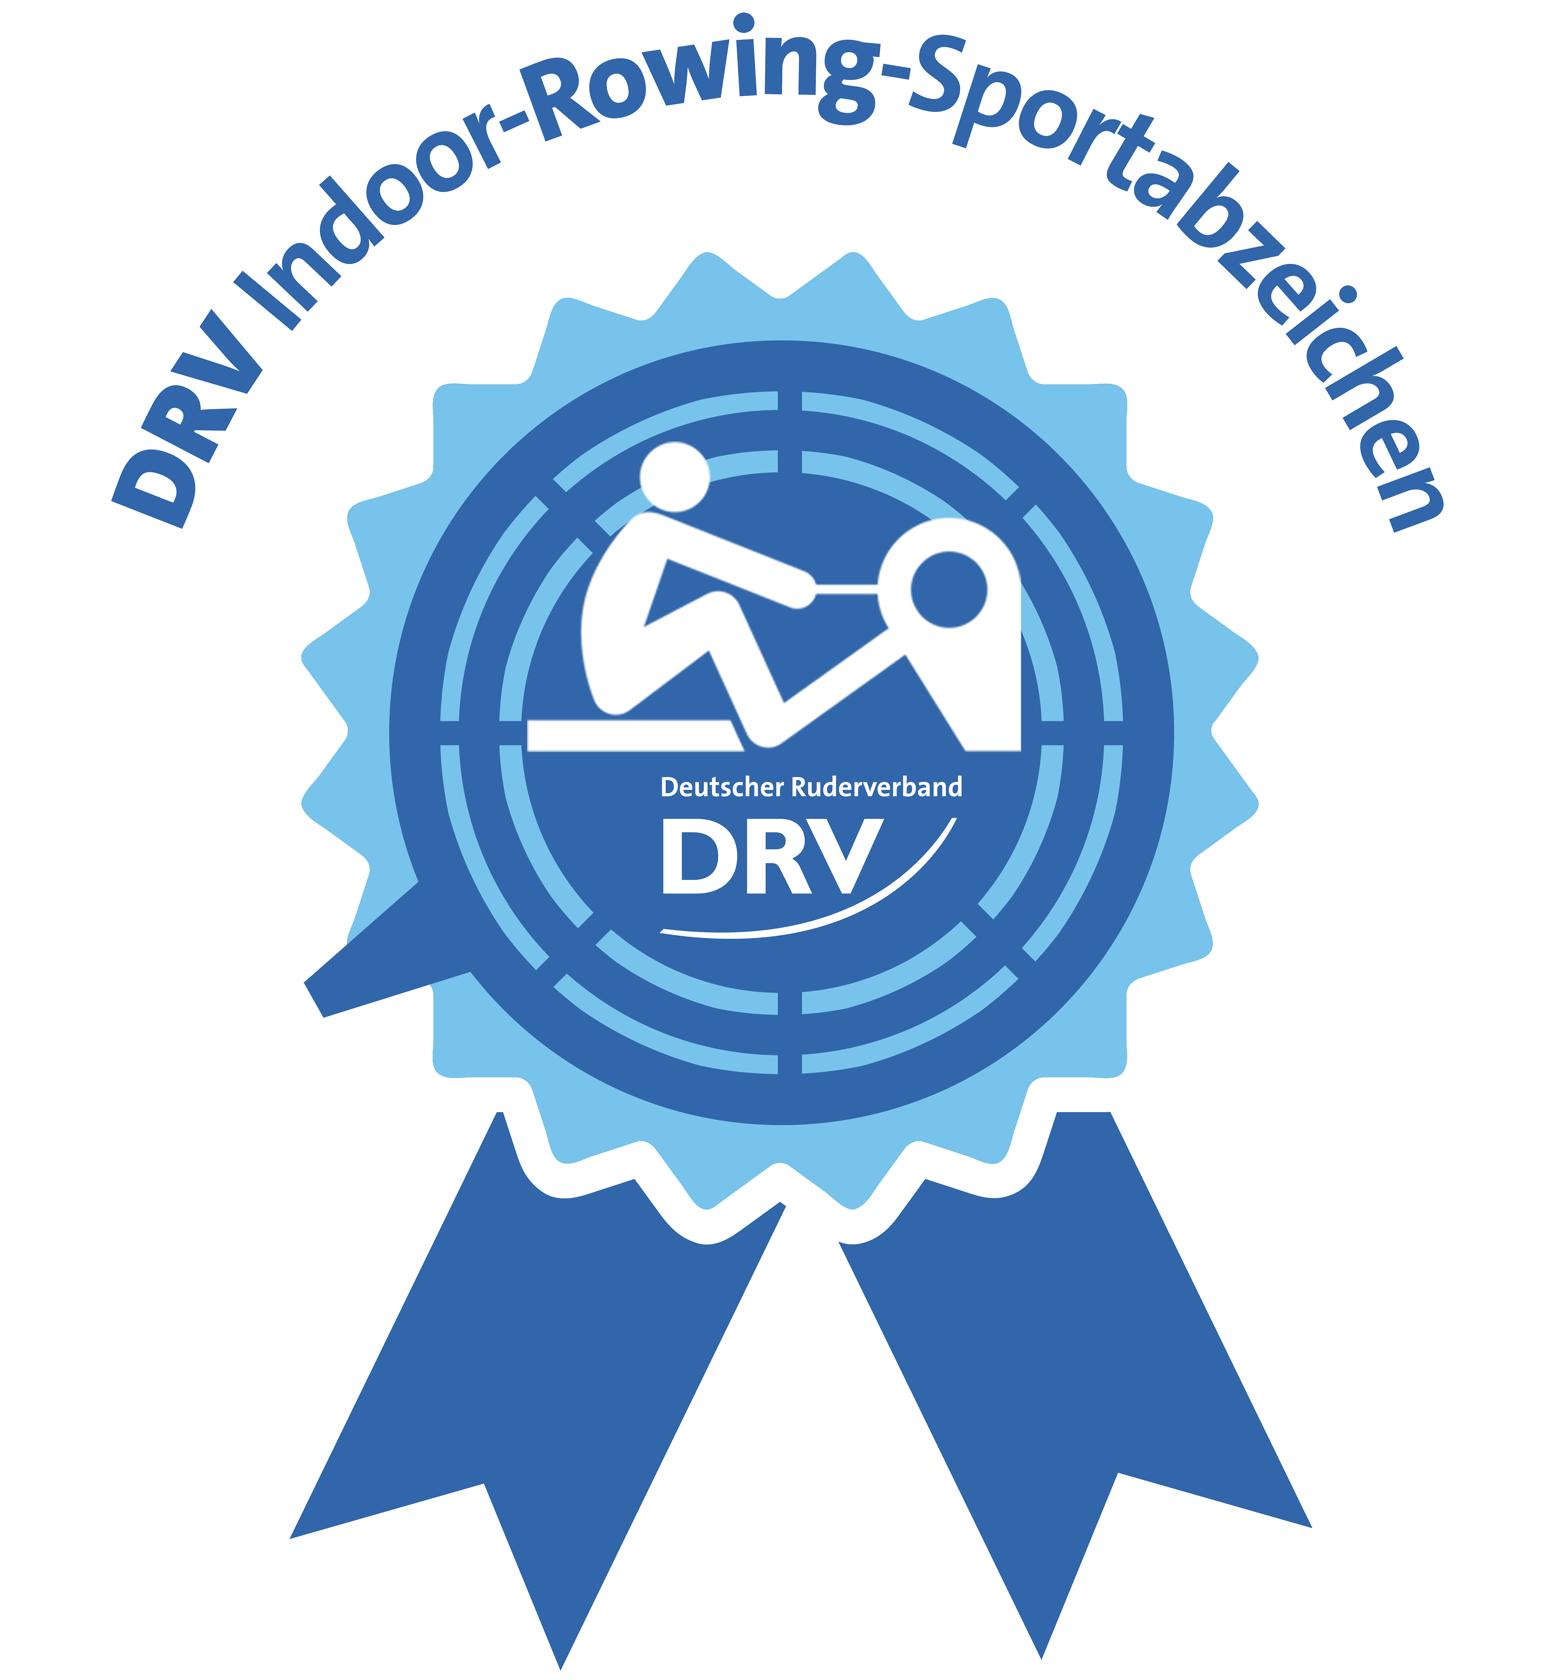 DRV Indoor-Rowing Sportabzeichen | RUDEREI